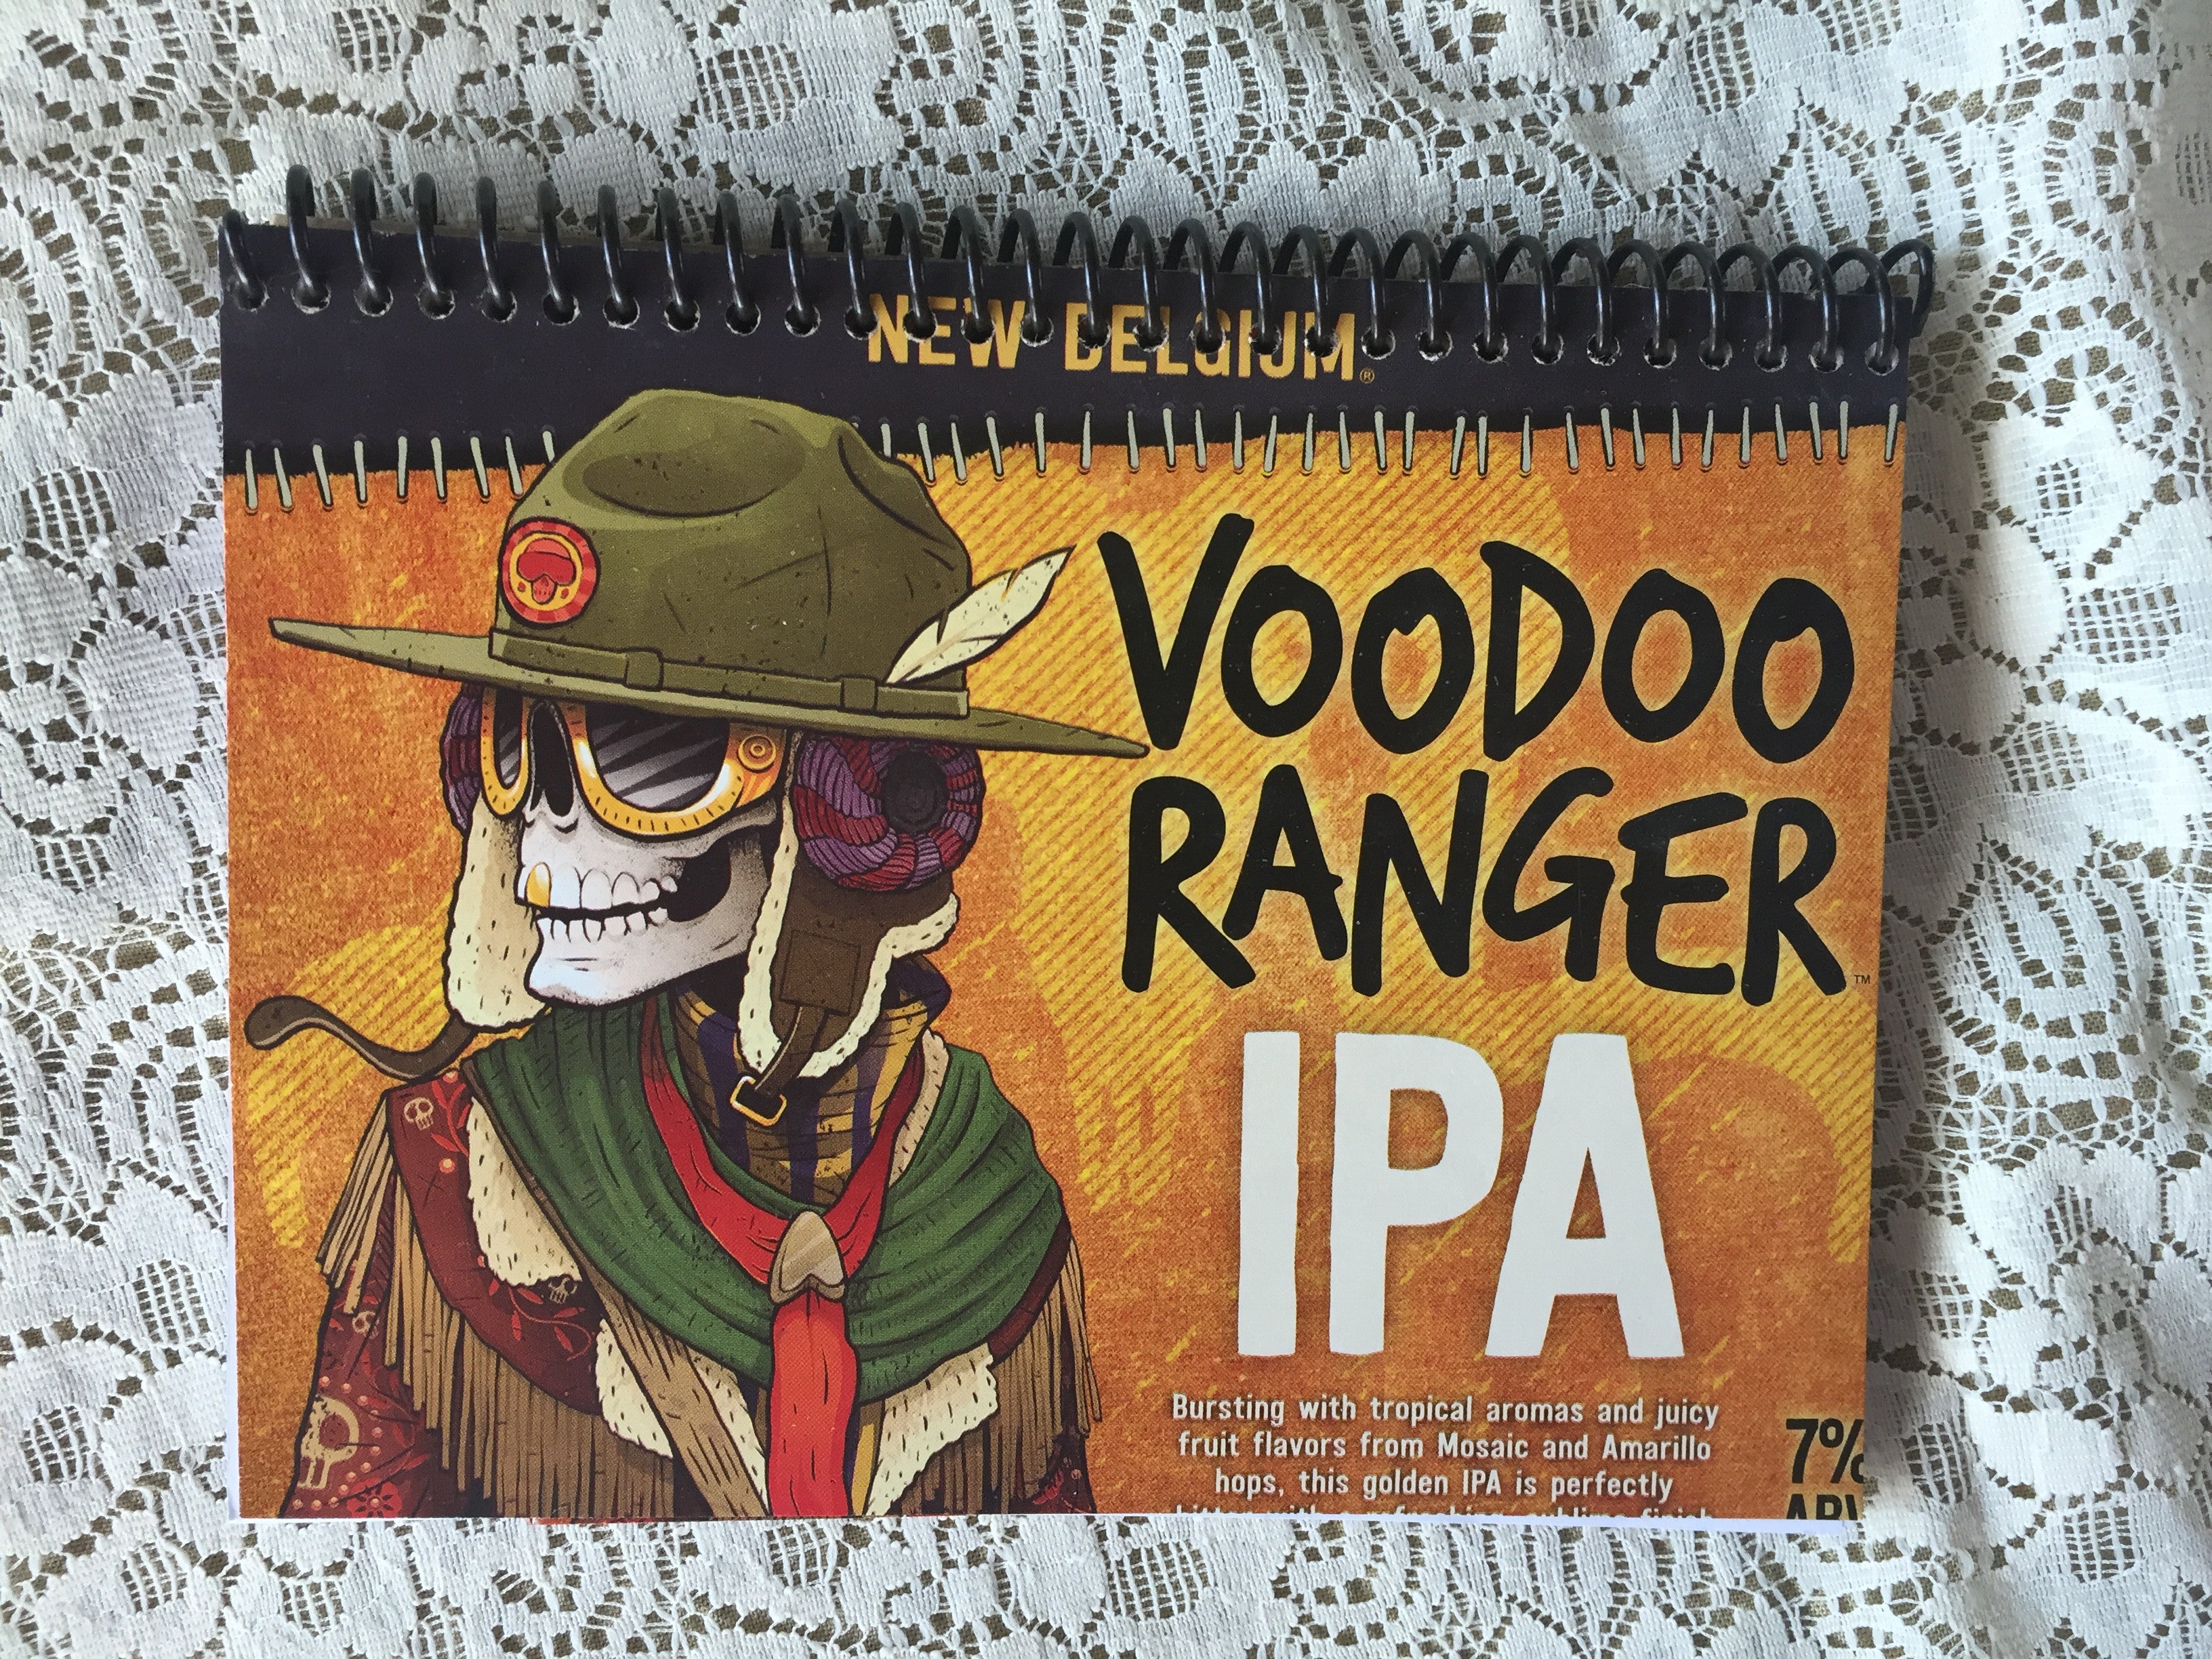 Voodoo Ranger IPA Recycled Beer Carton Notebook